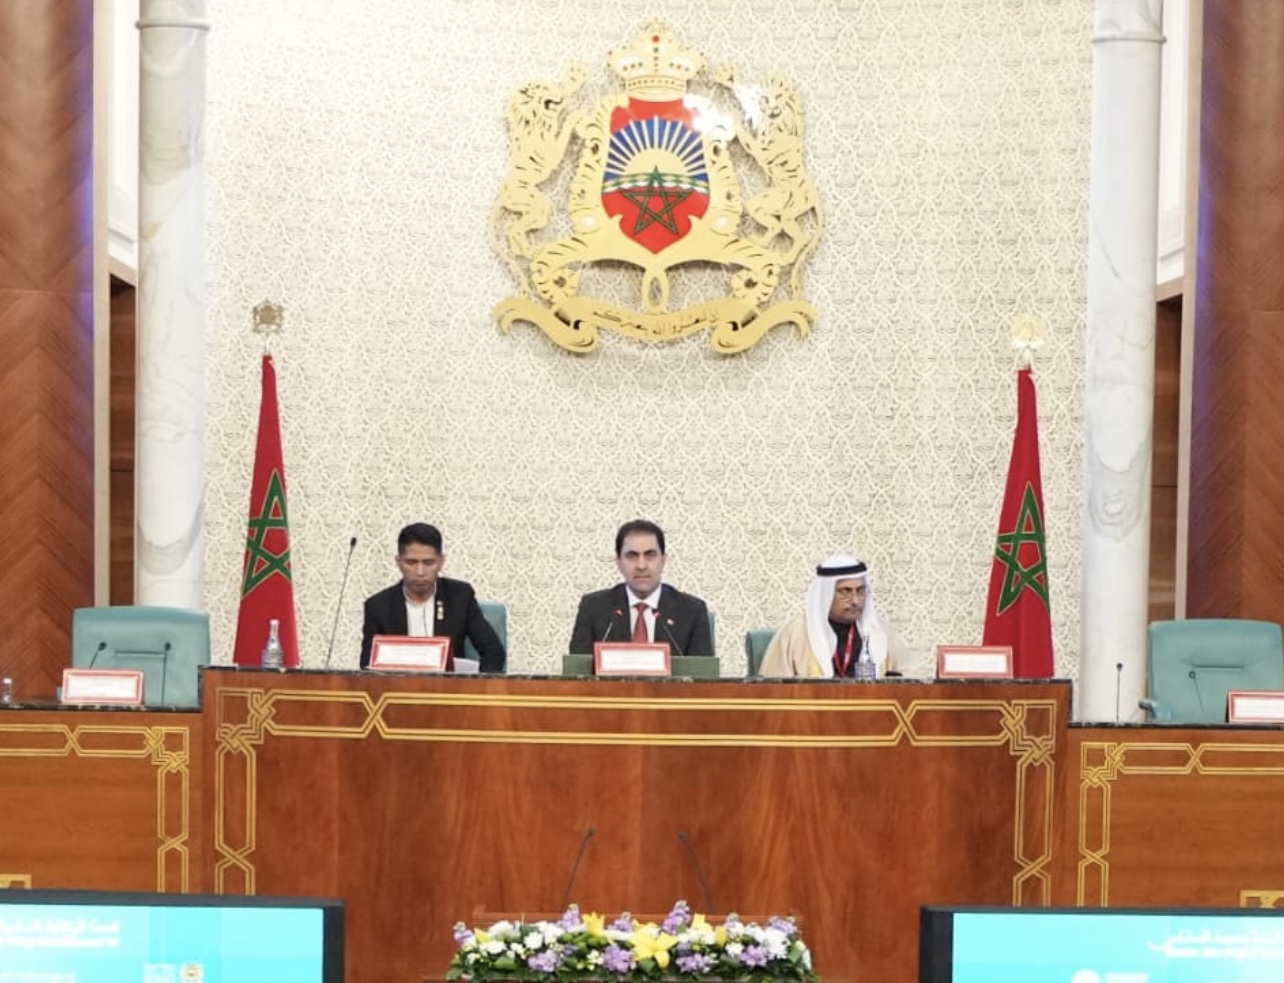 المندلاوي يترأس اجتماعات المؤتمر البرلماني للتعاون جنوب-جنوب المنعقد في المغرب